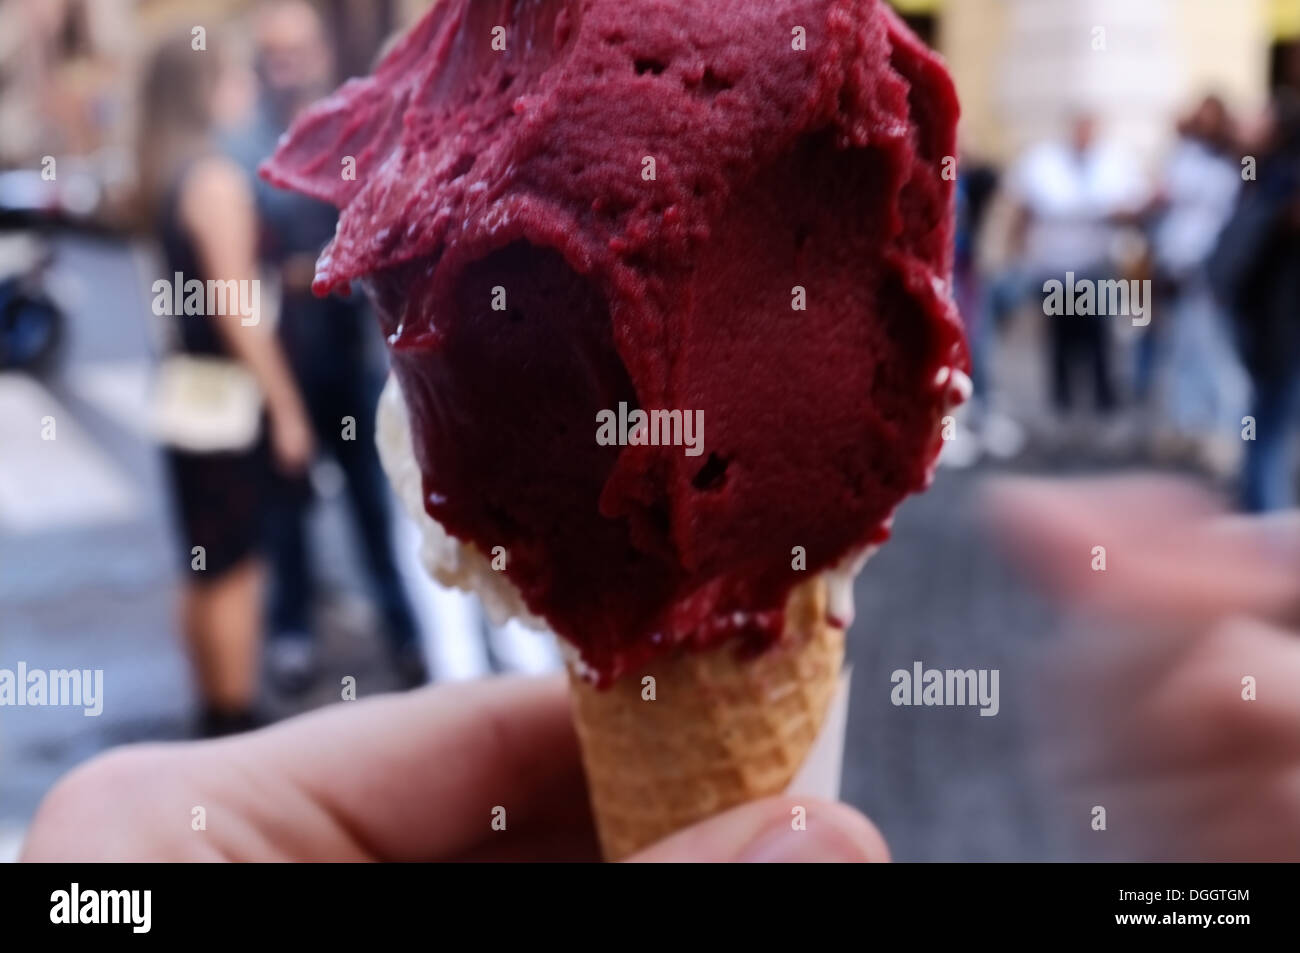 Giant Italian Ice cream. Stock Photo